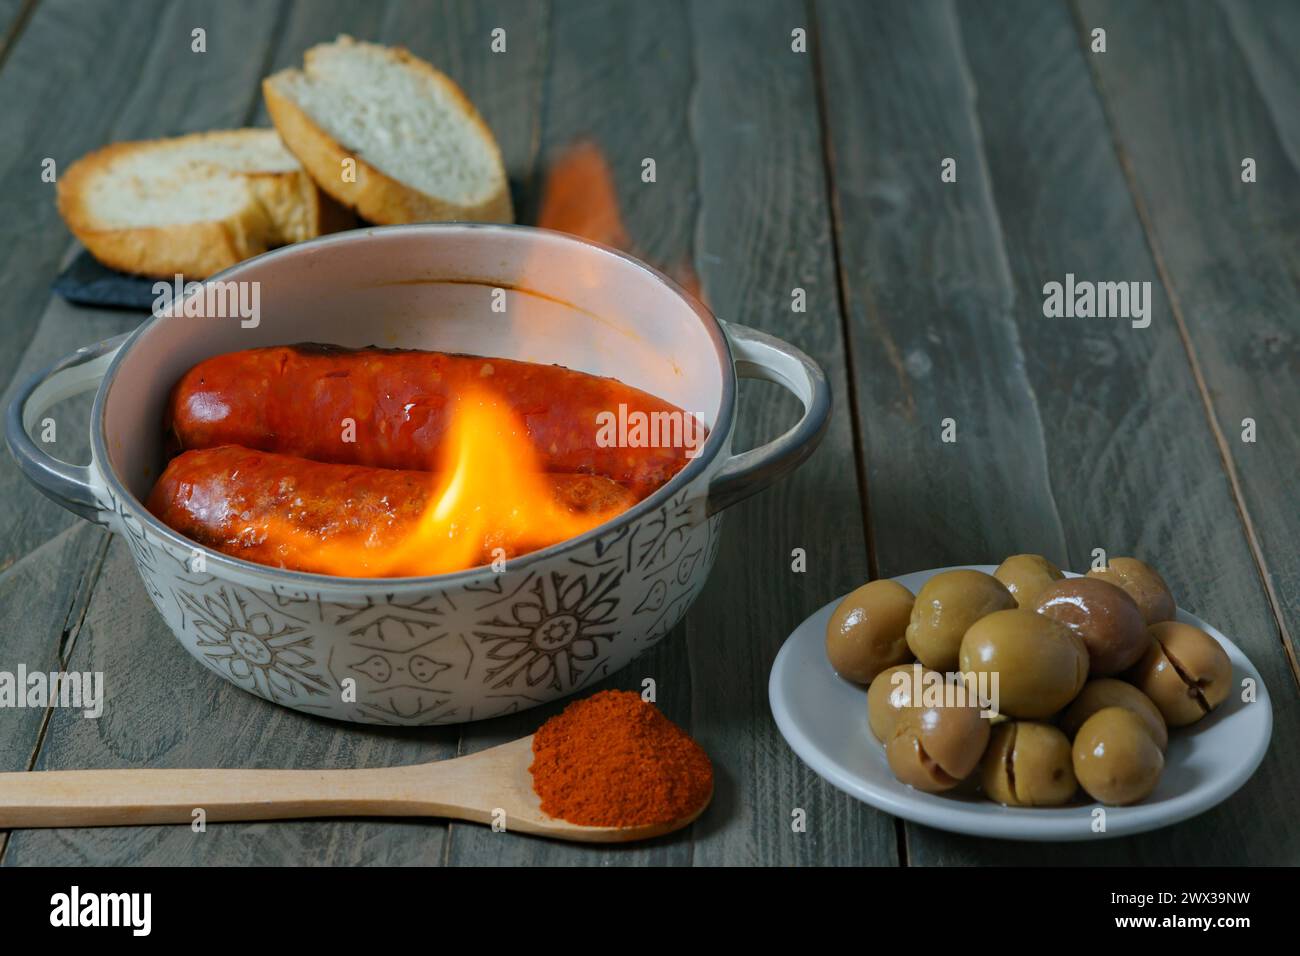 Tapa typiquement espagnole, chorizo à l'enfer dans une casserole en céramique accompagnée de pain et d'olives Banque D'Images